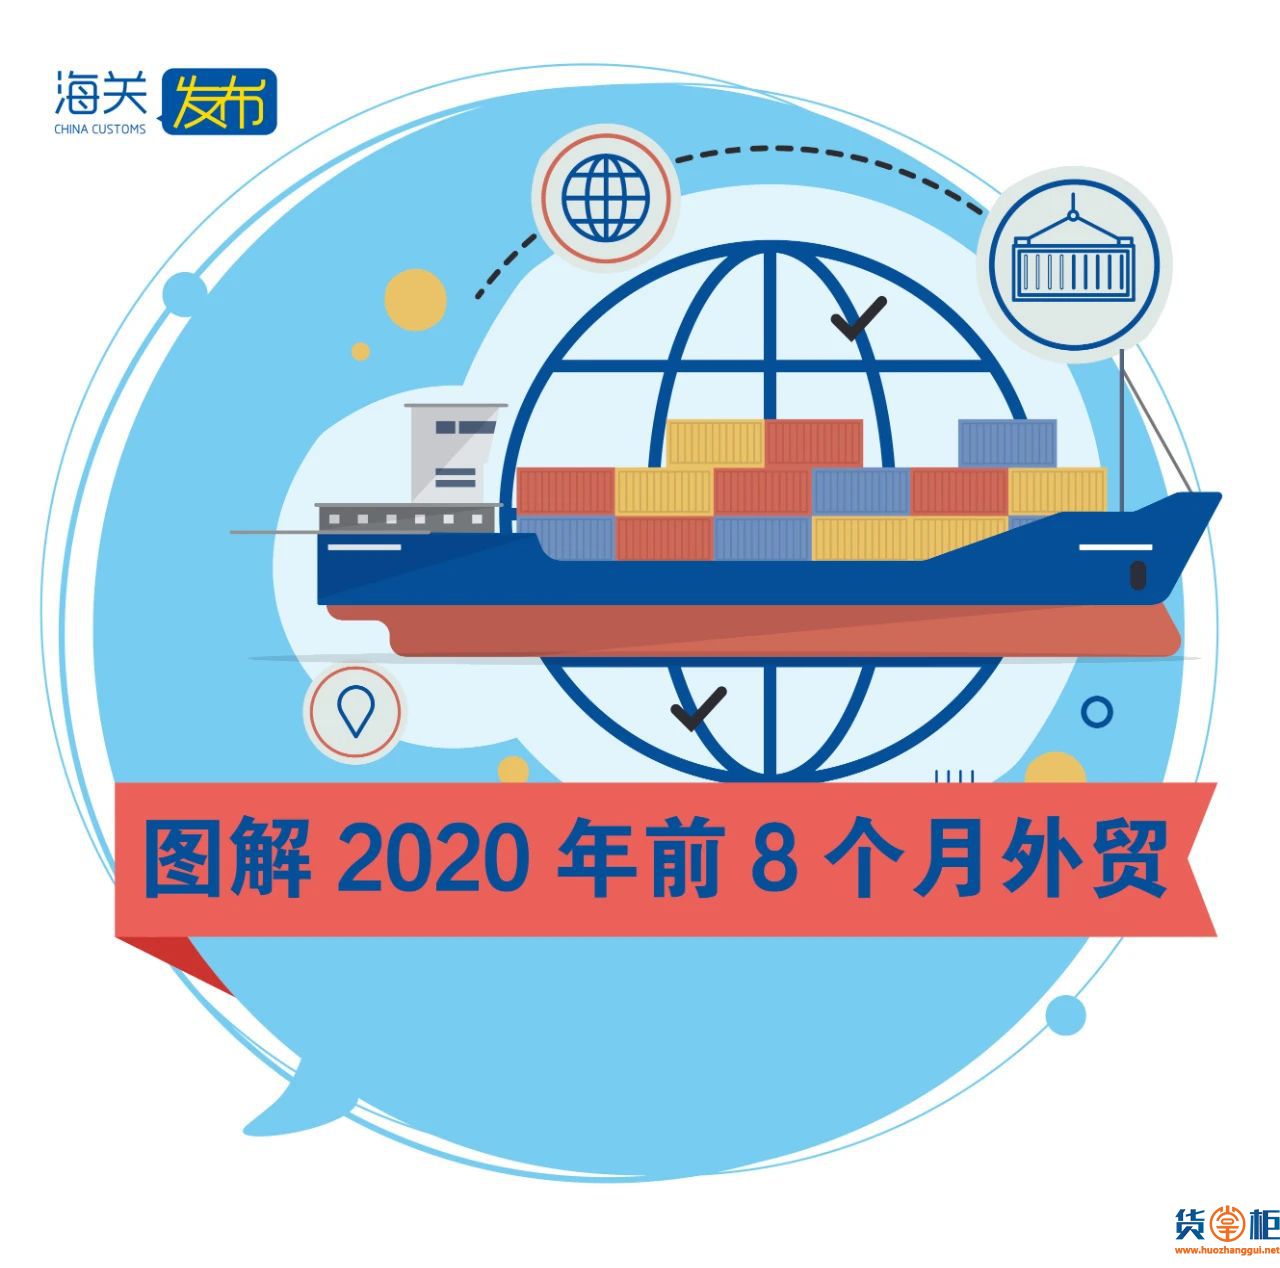 海关发布2020年前8个月我国外贸进出口情况数据